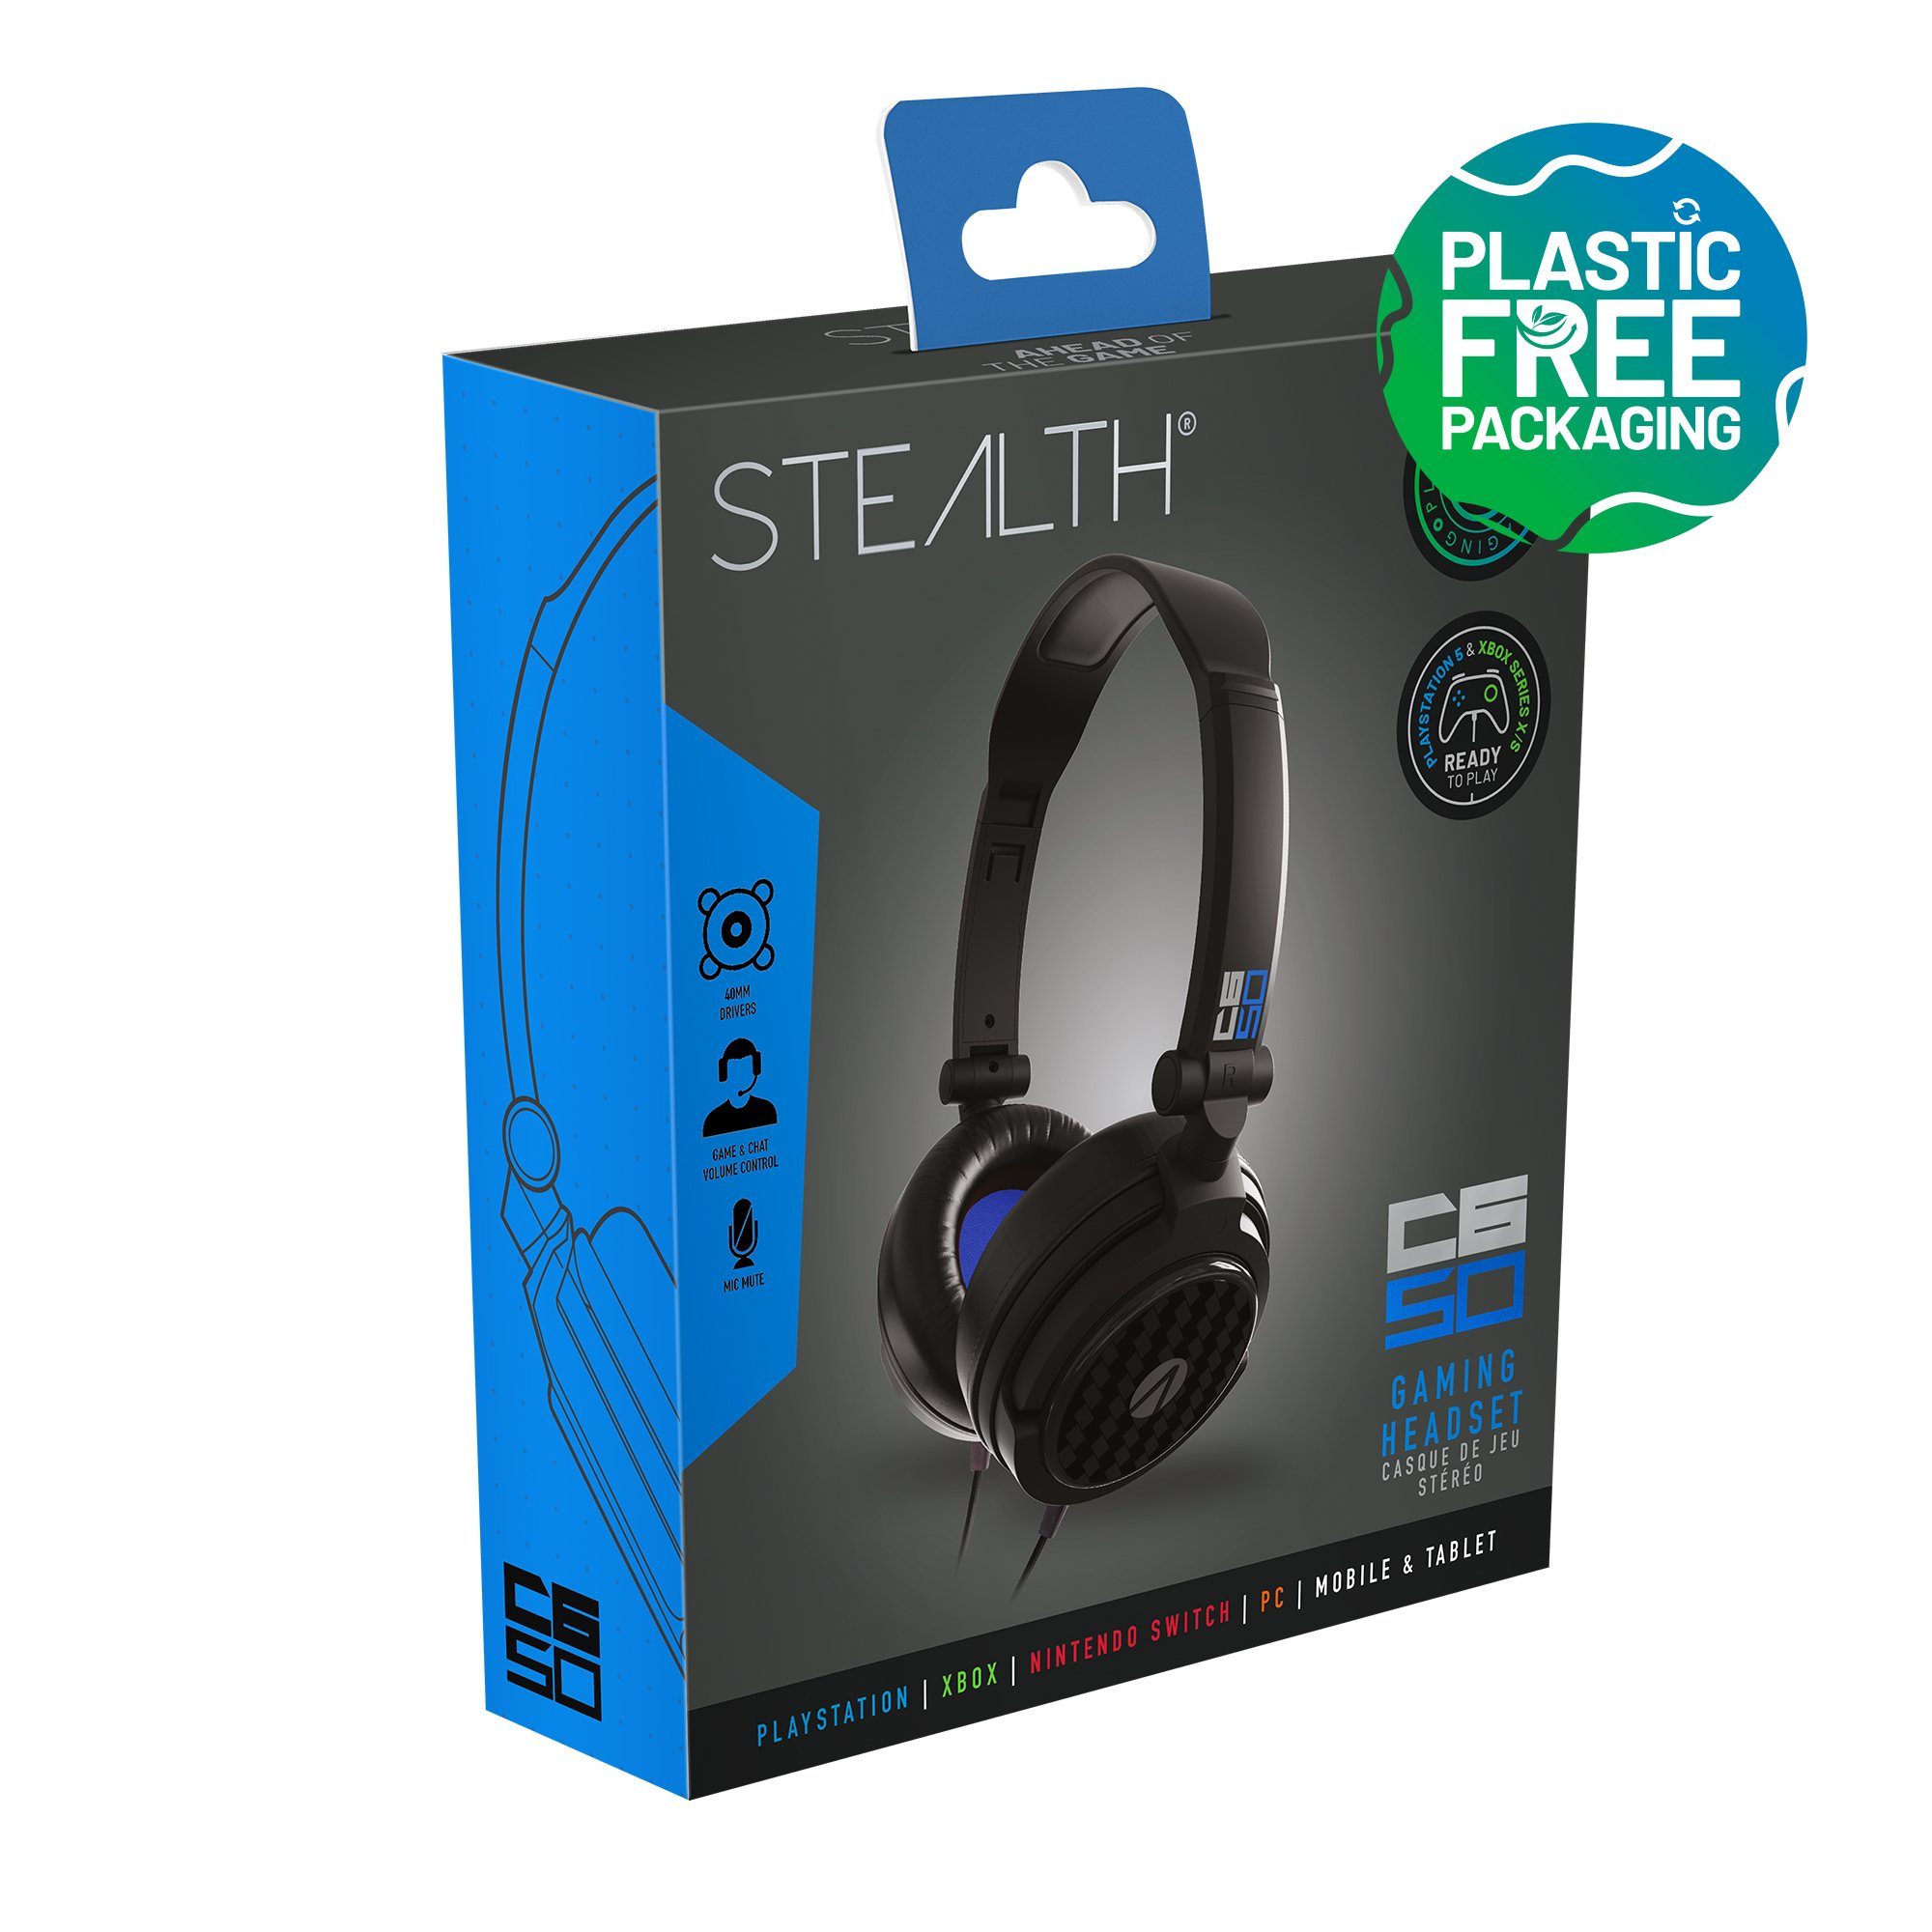 Stealth Multiformat Stereo schwarz (Plastikfreie Gaming Verpackung) C6-50 Stereo-Headset Headset